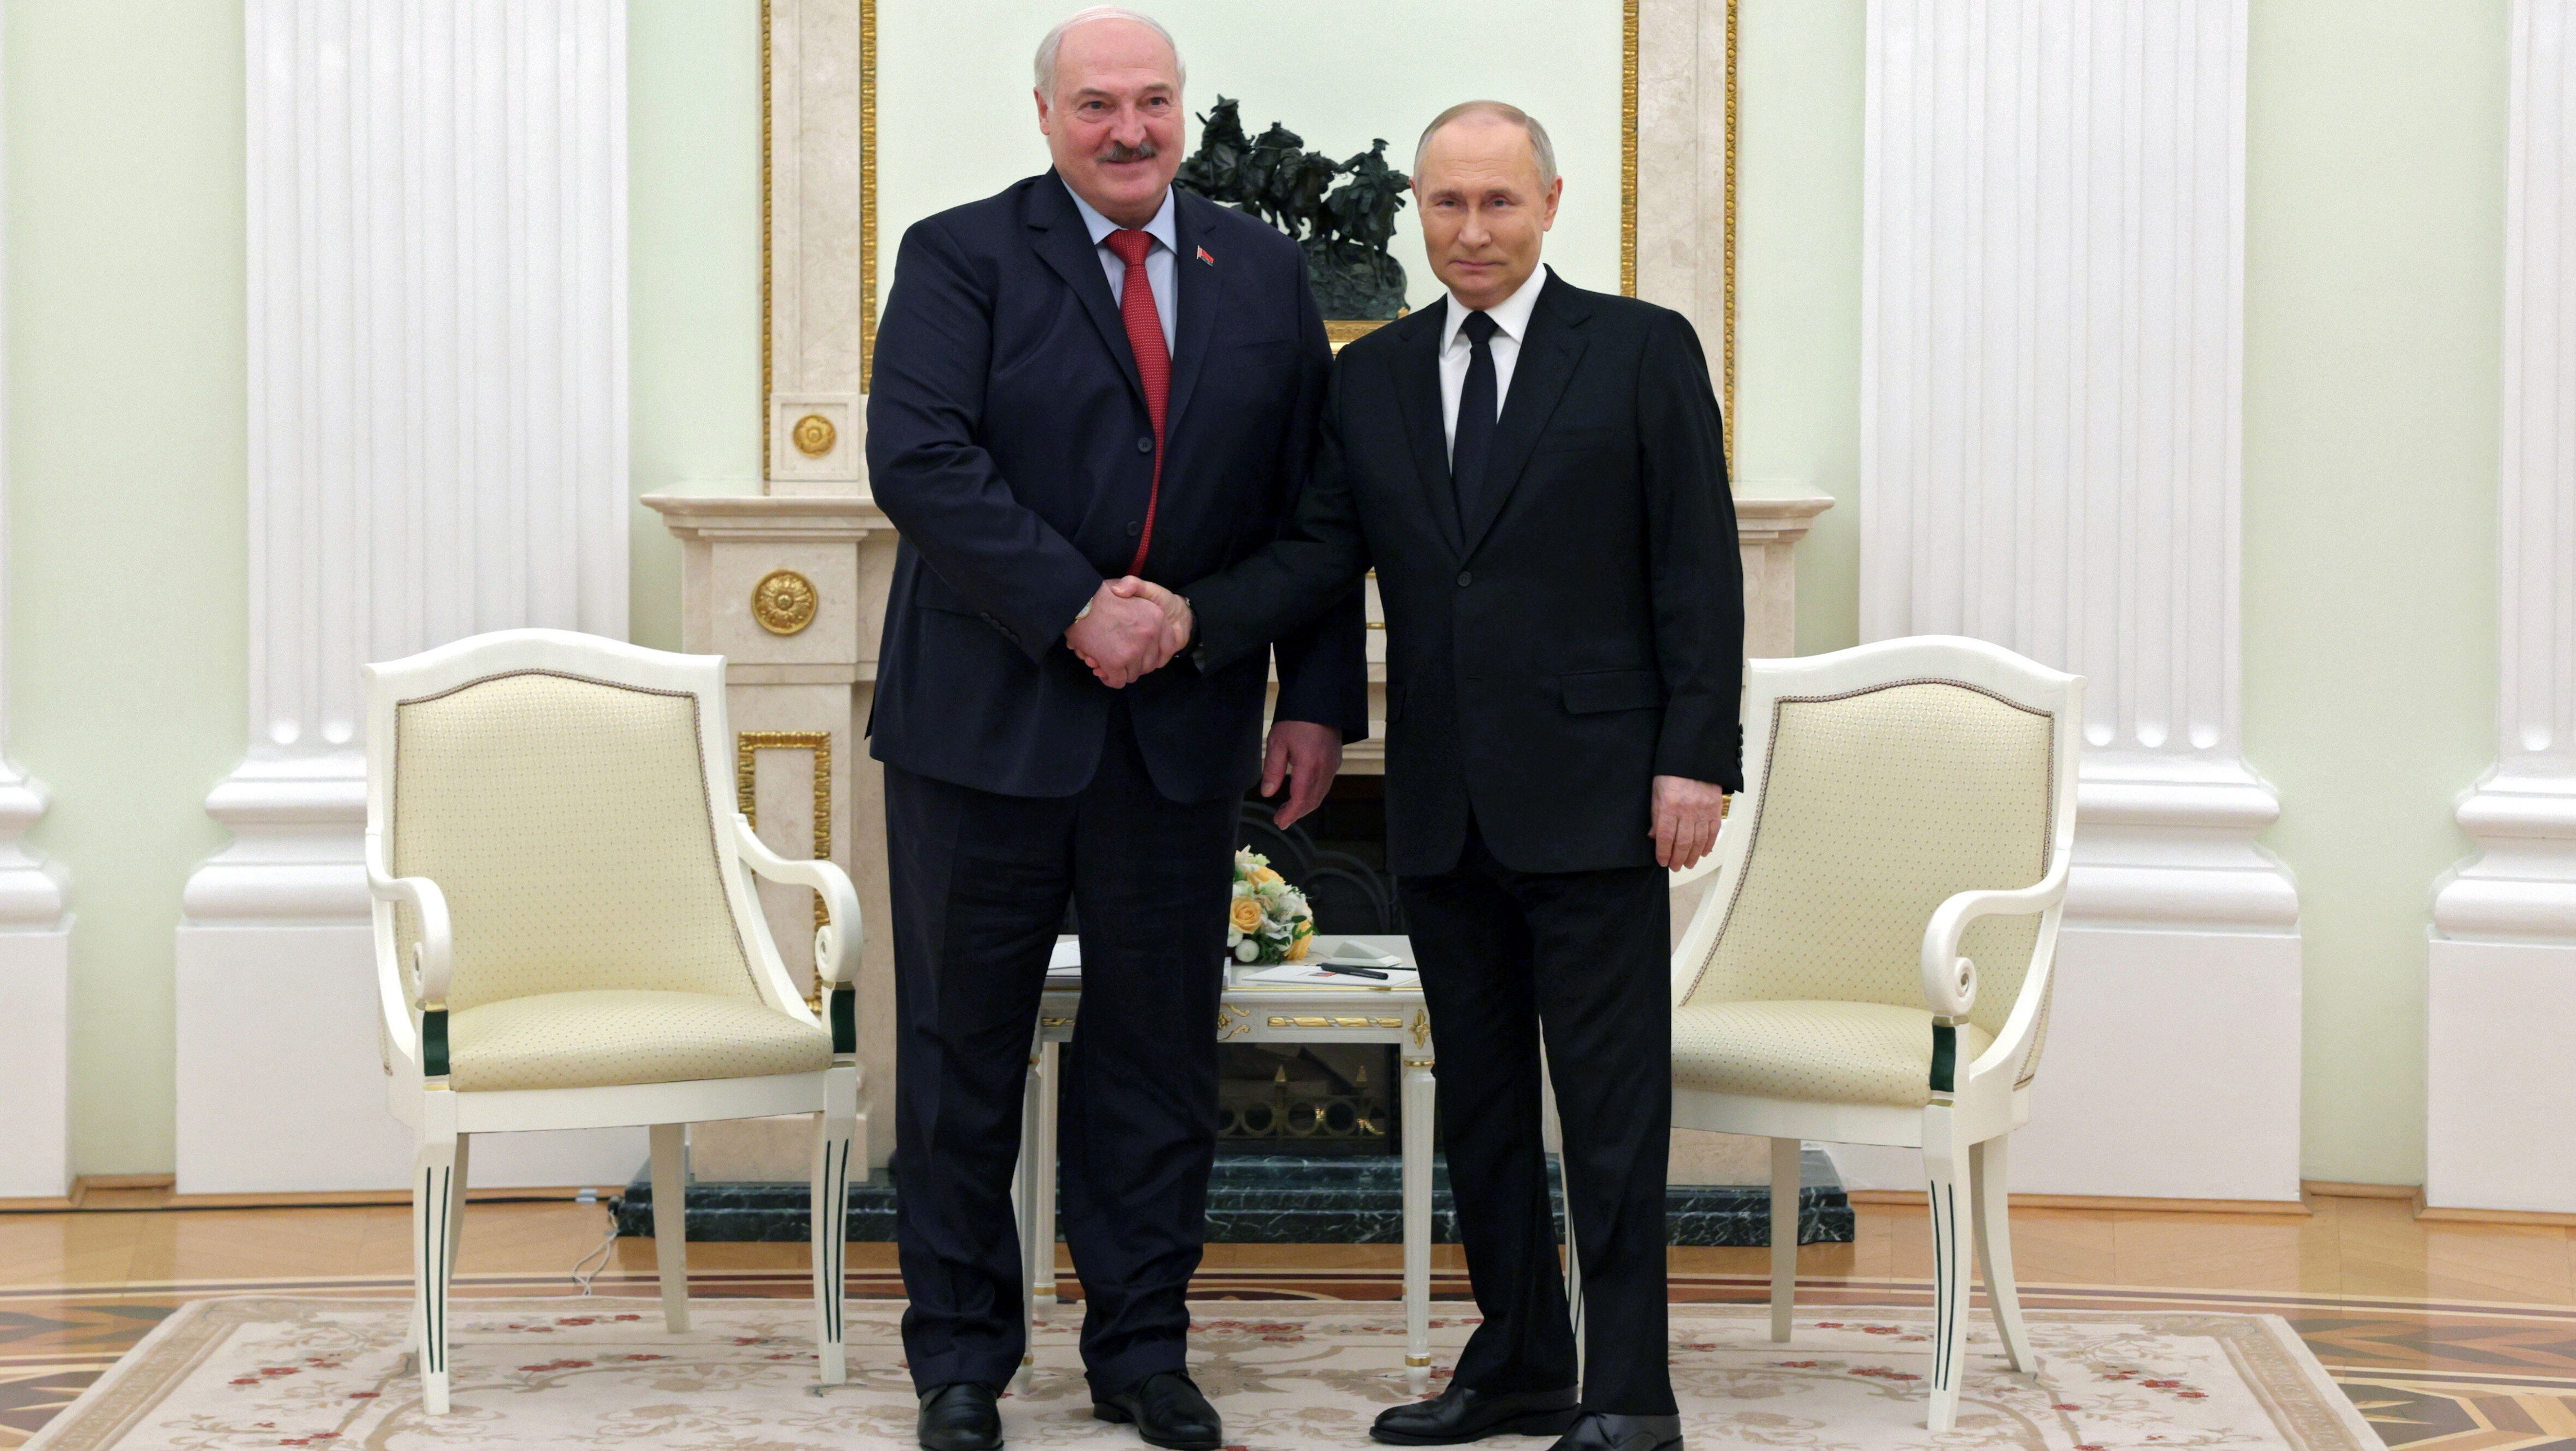 aleksander łukaszenko i władimir putin rozmawiali o pokoju w ukrainie. ważną rolę miałaby odegrać polska